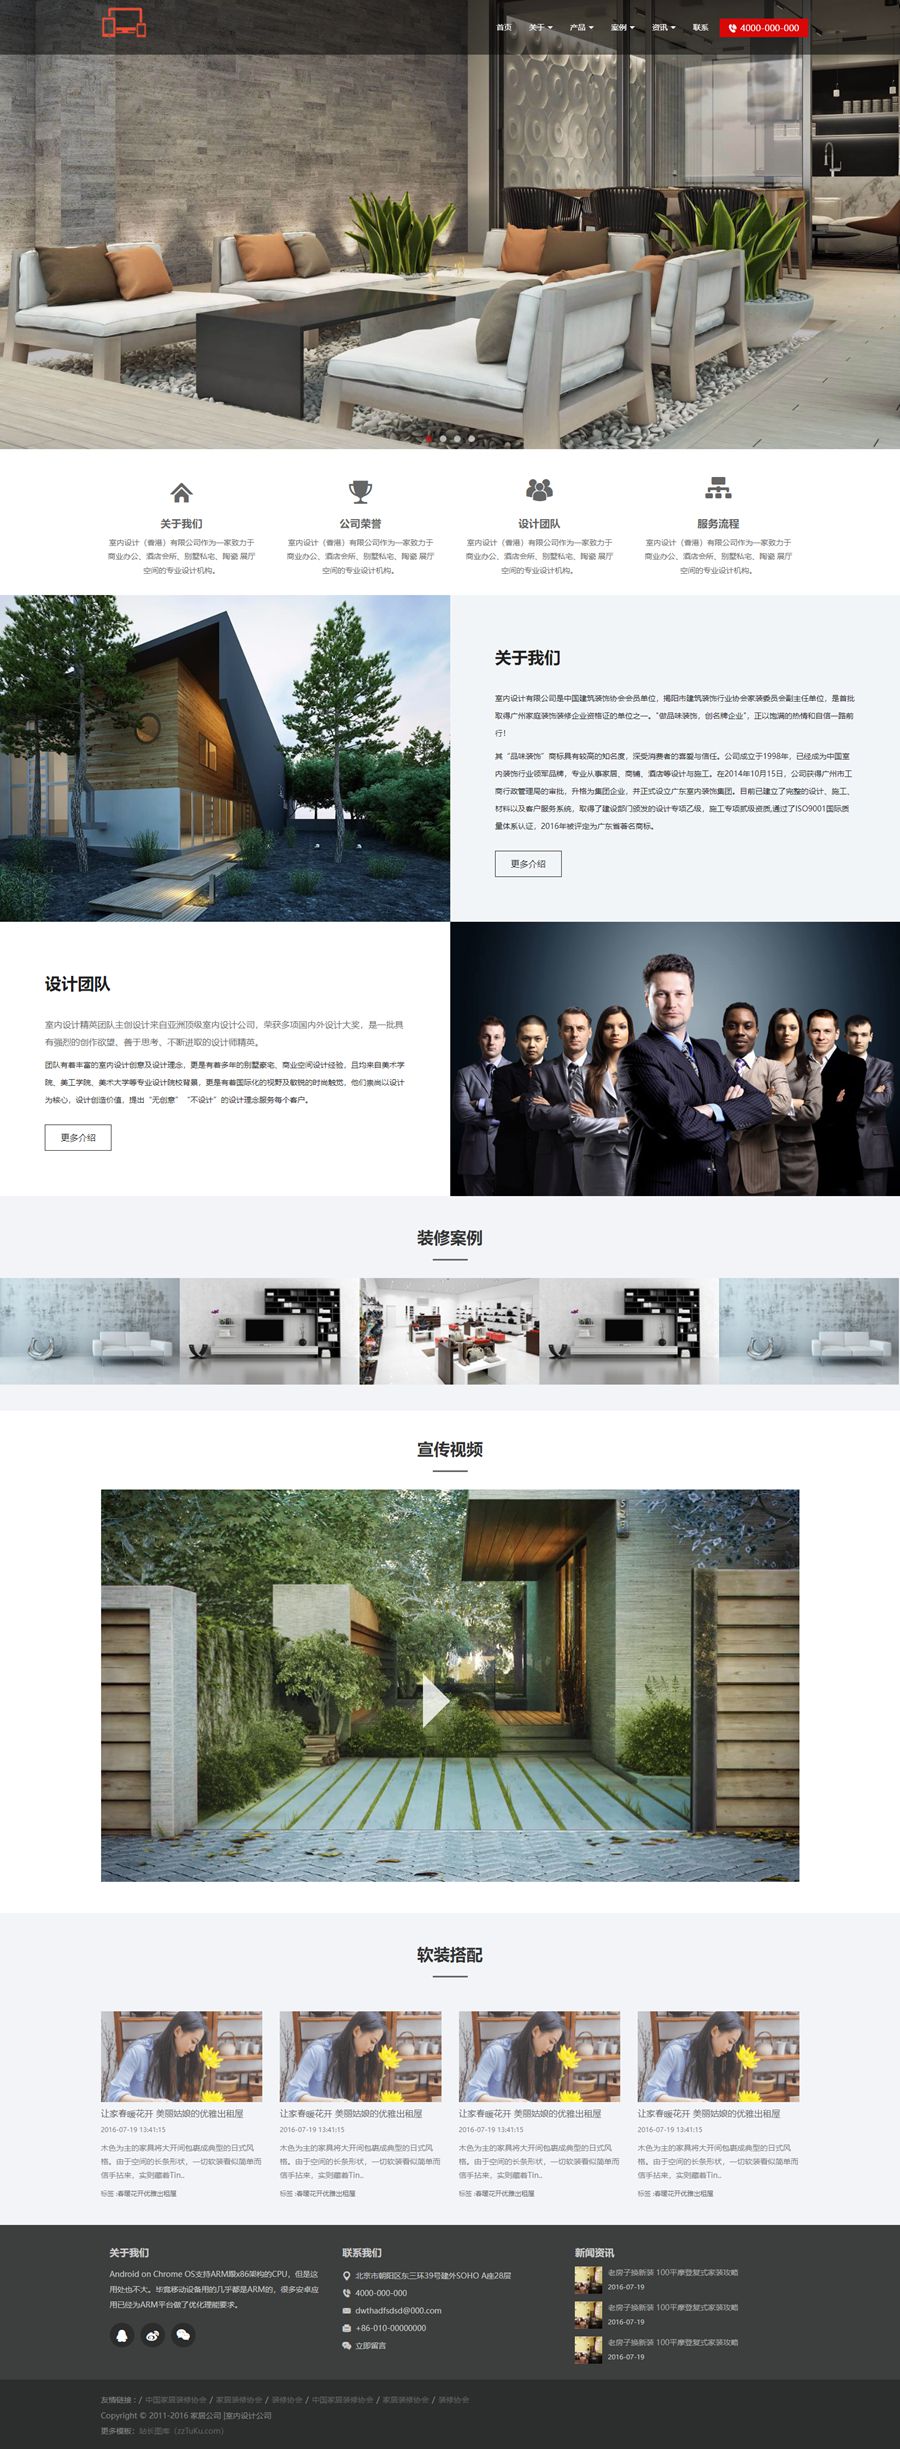 全屏展示家居装修室内设计公司静态HTML网站模板